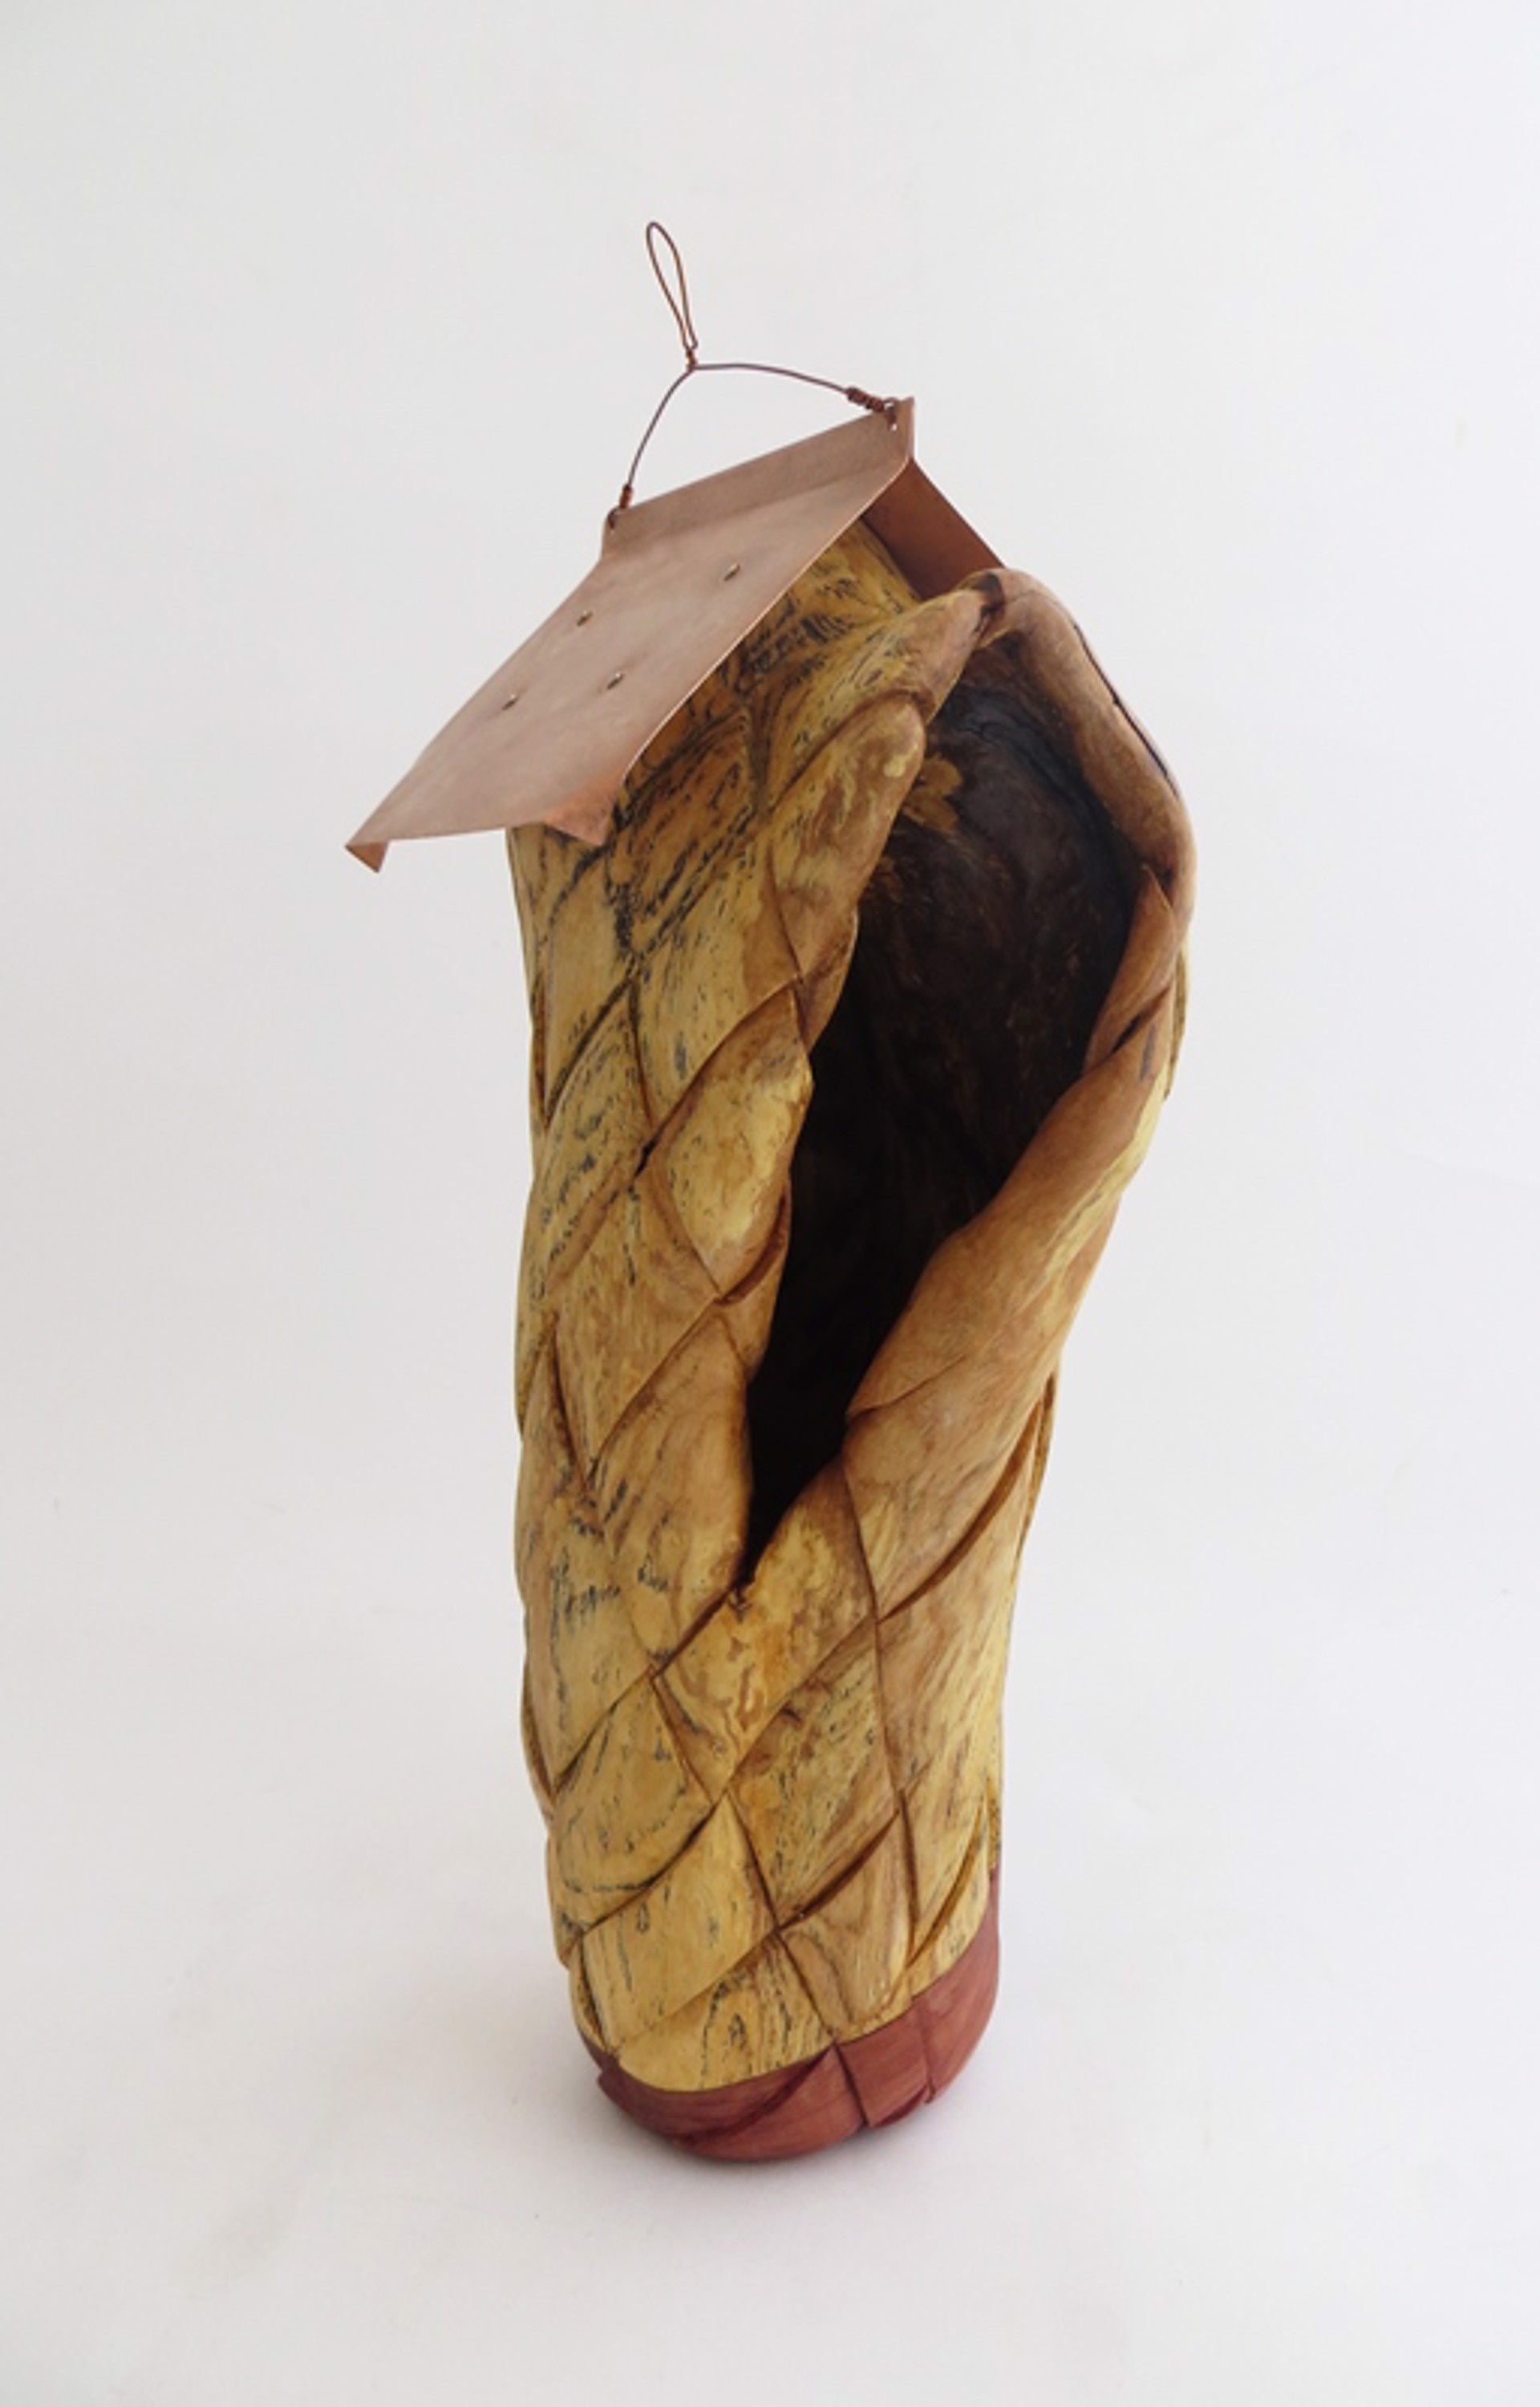 Birdhouse by Traci Rhoades